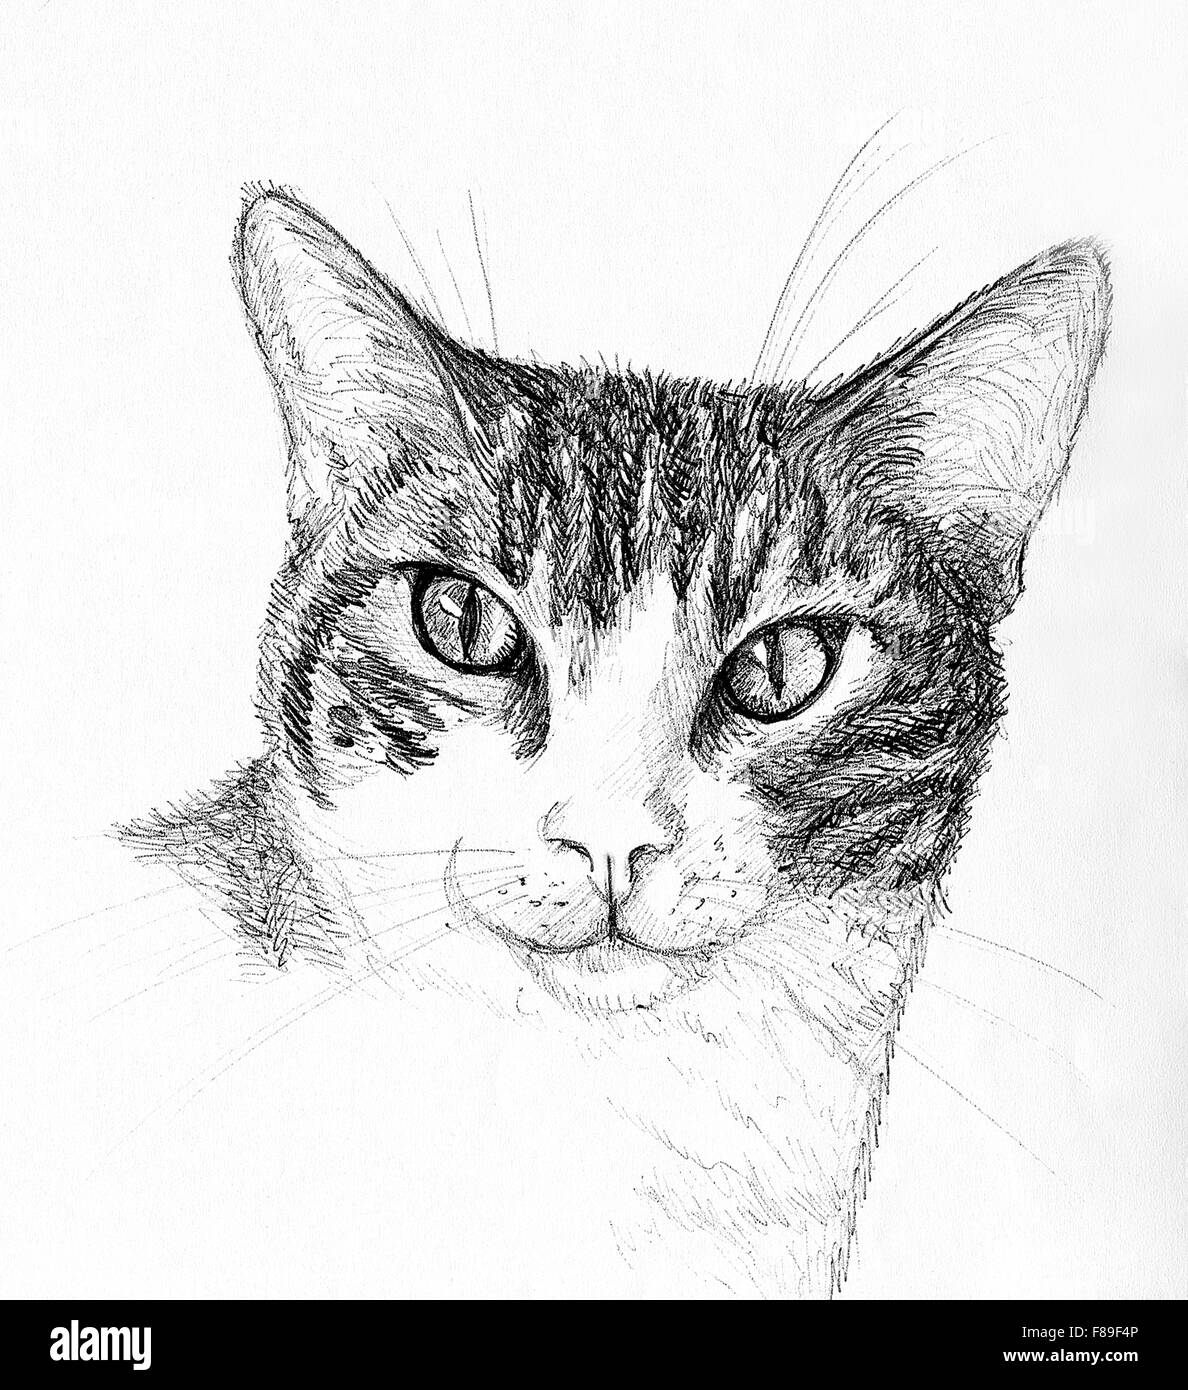 Ritratto di tabby e white cat. Illustrazione della penna. Foto Stock